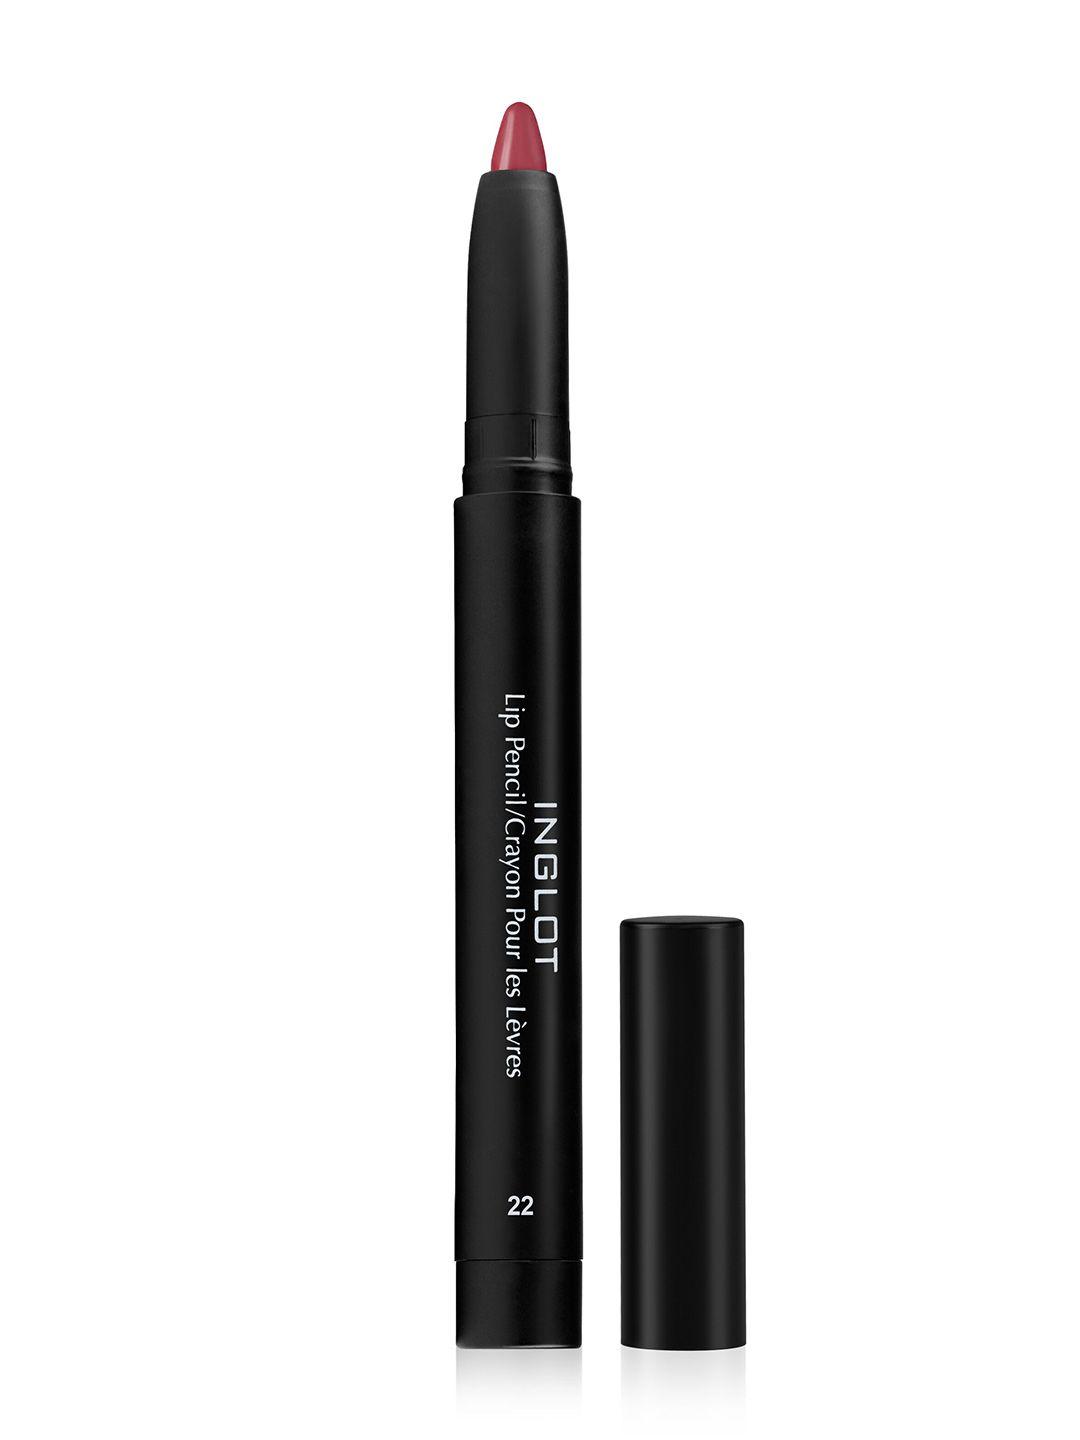 inglot amc matte lip pencil crayon with sharpener - 22